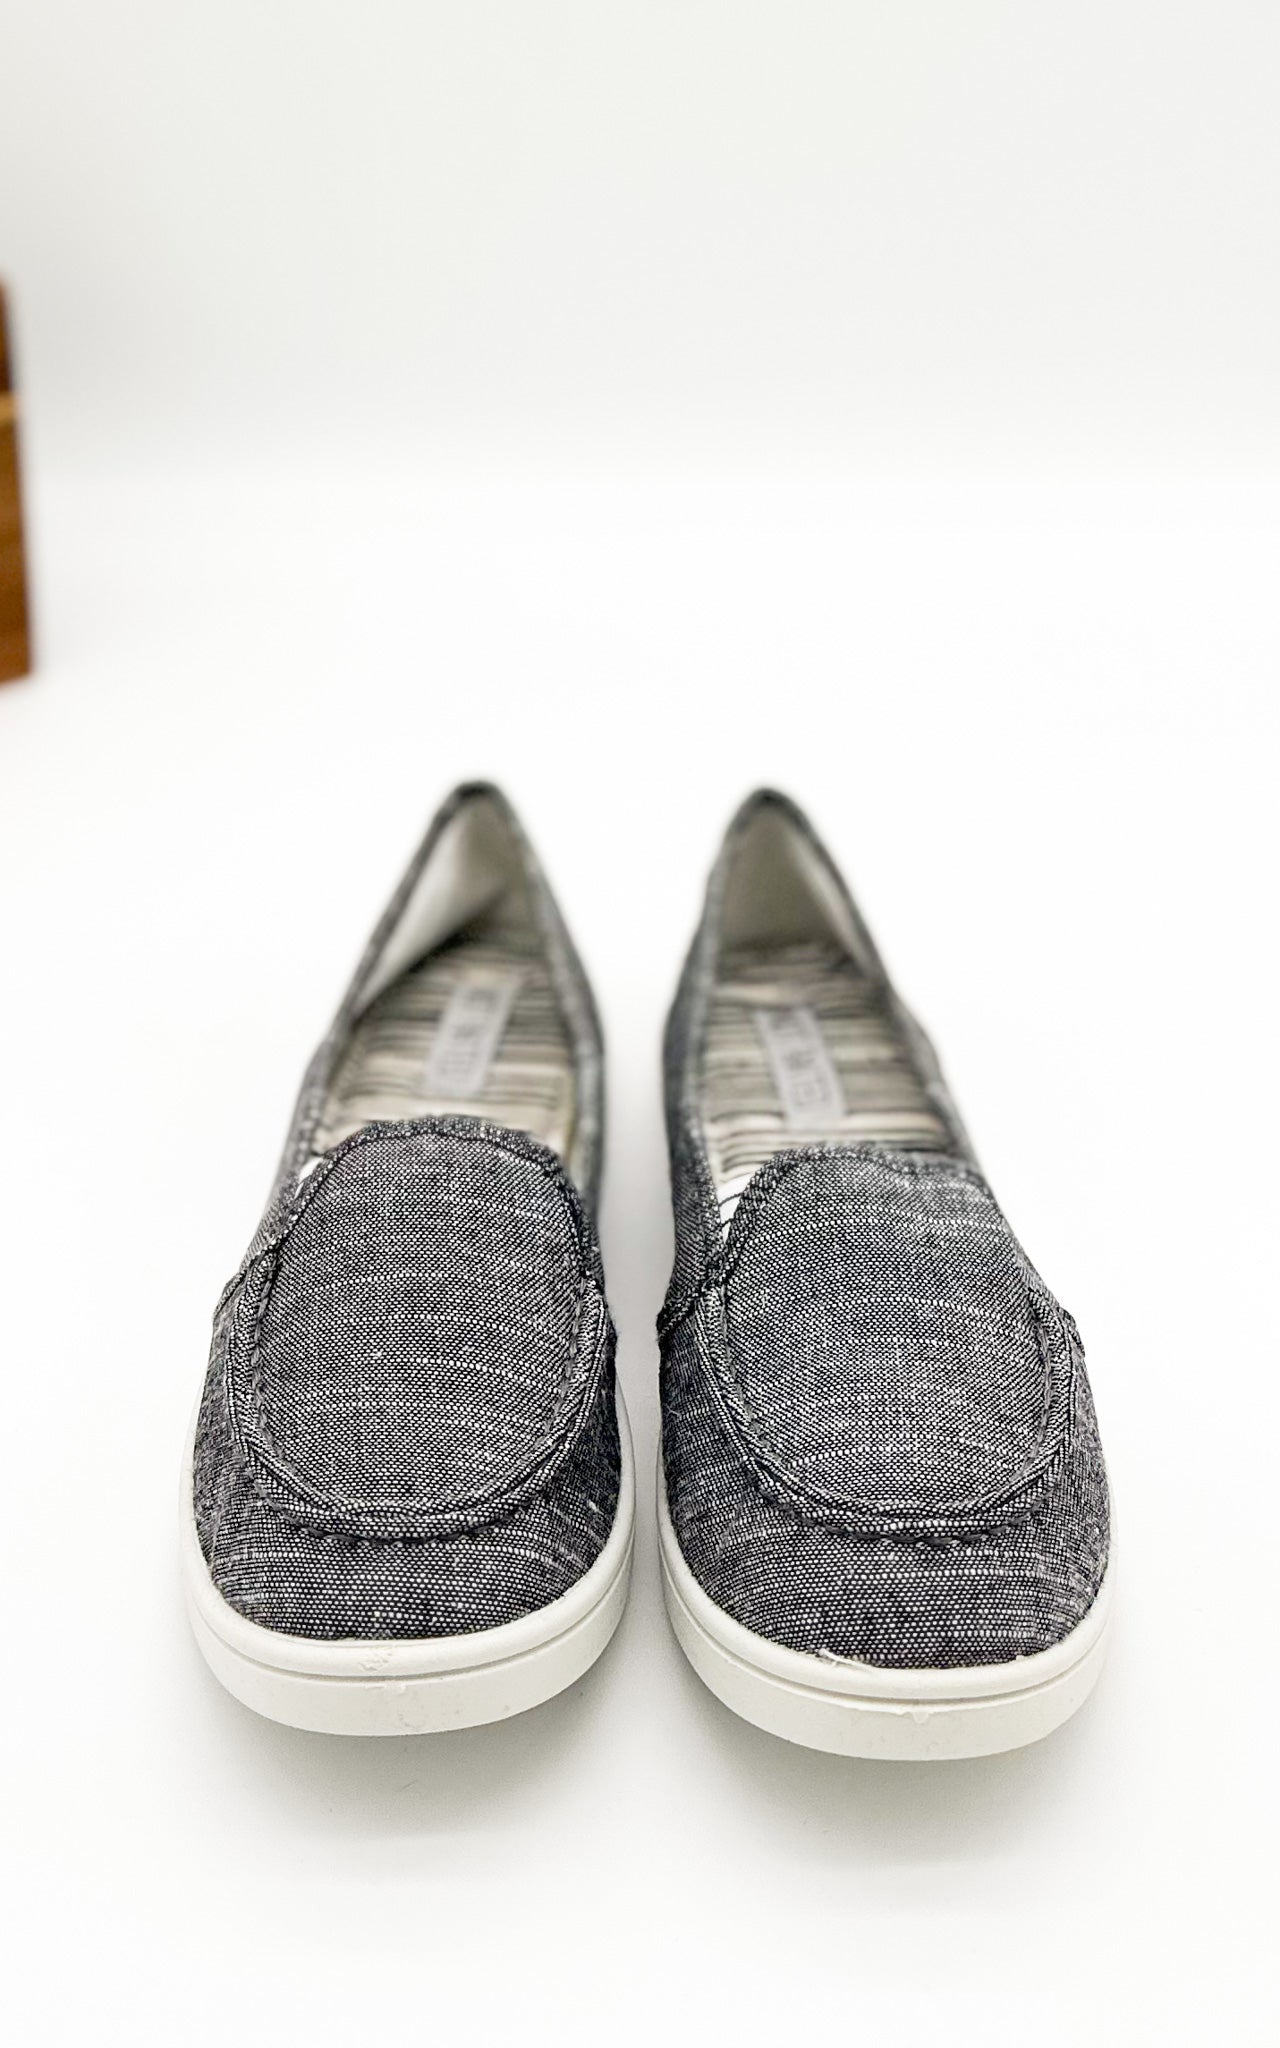 Mackerel Sneaker in Charcoal